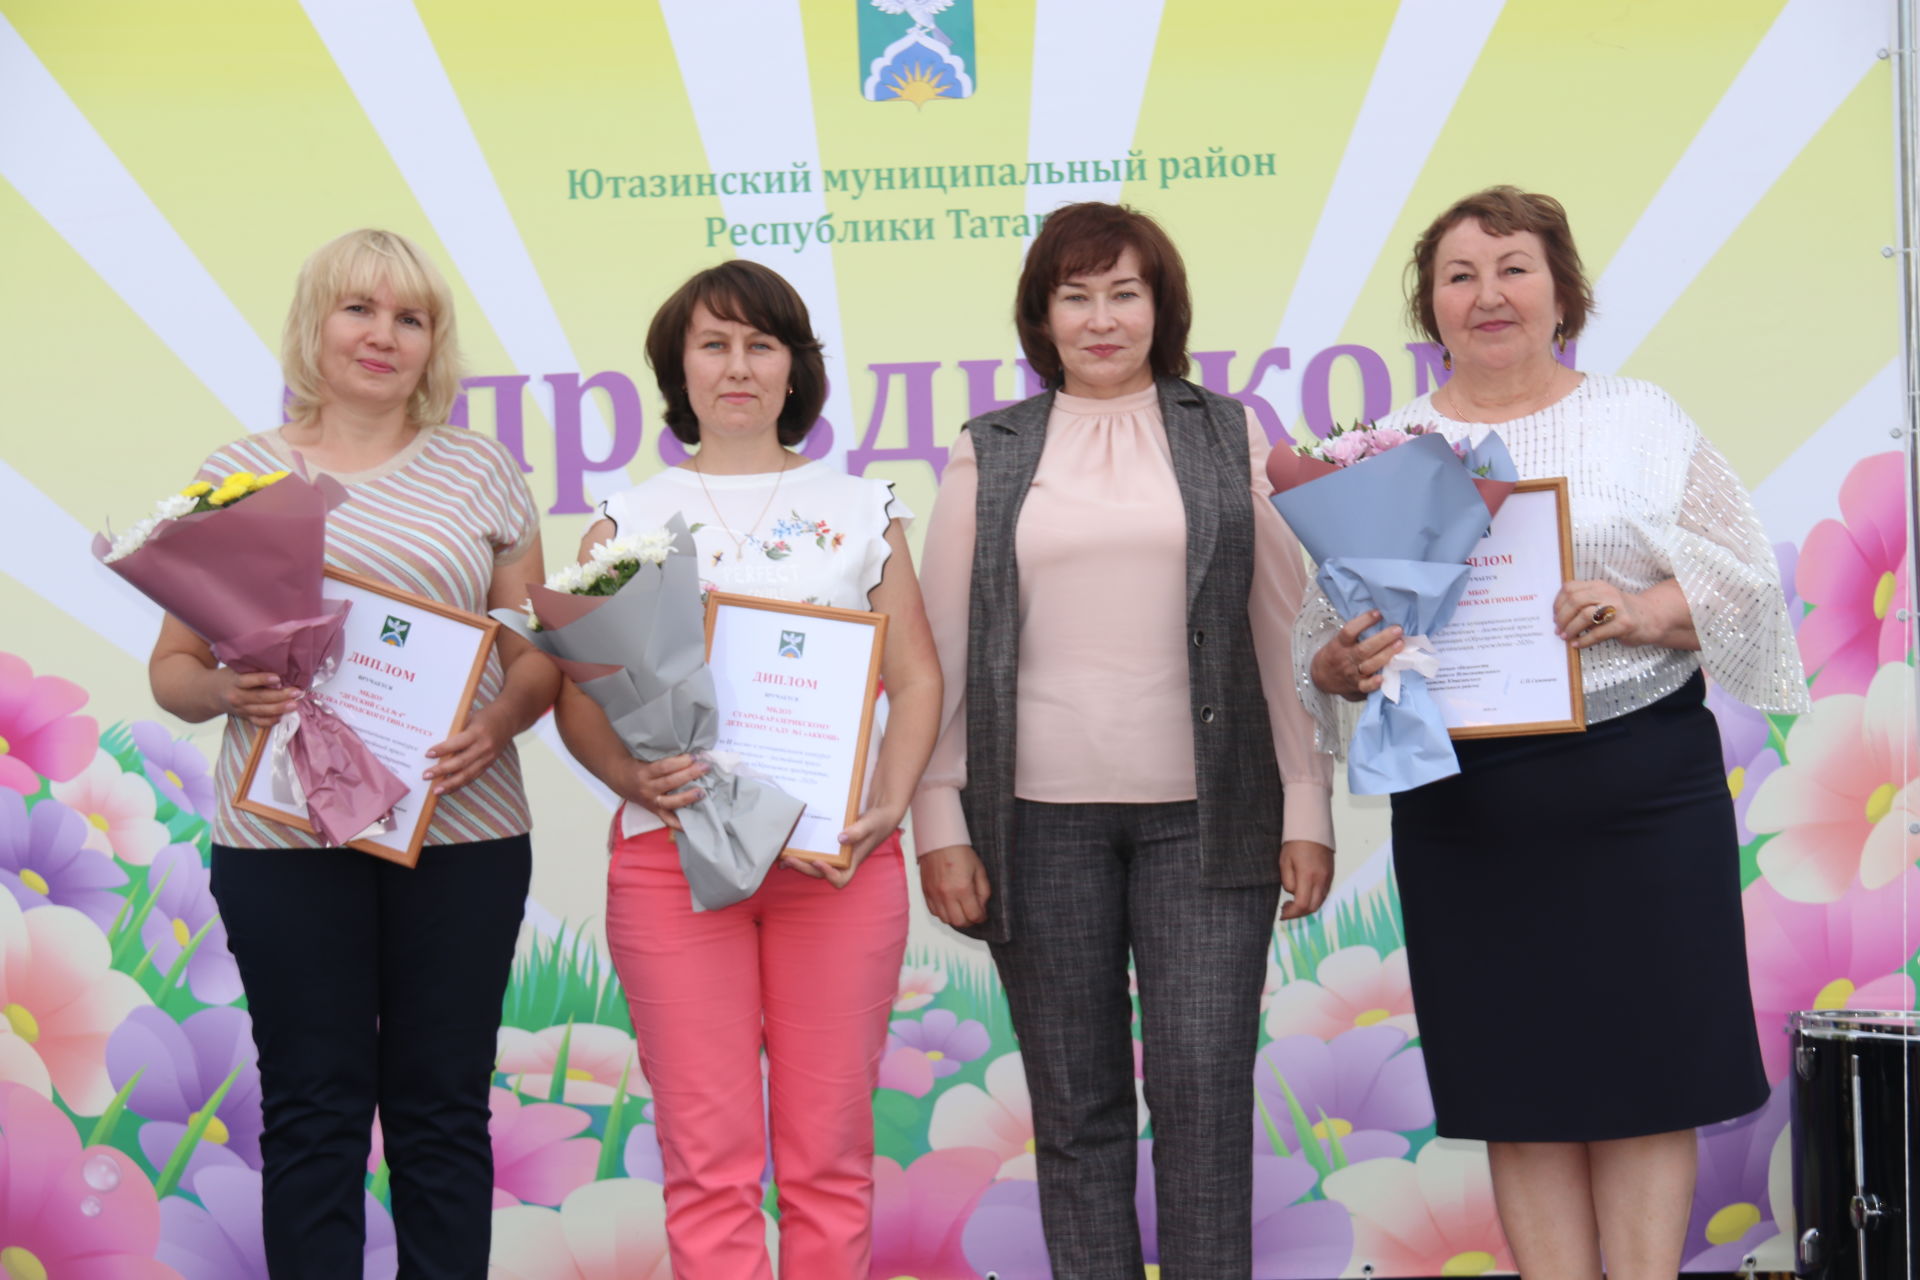 Жители Ютазинского района празднуют День Республики